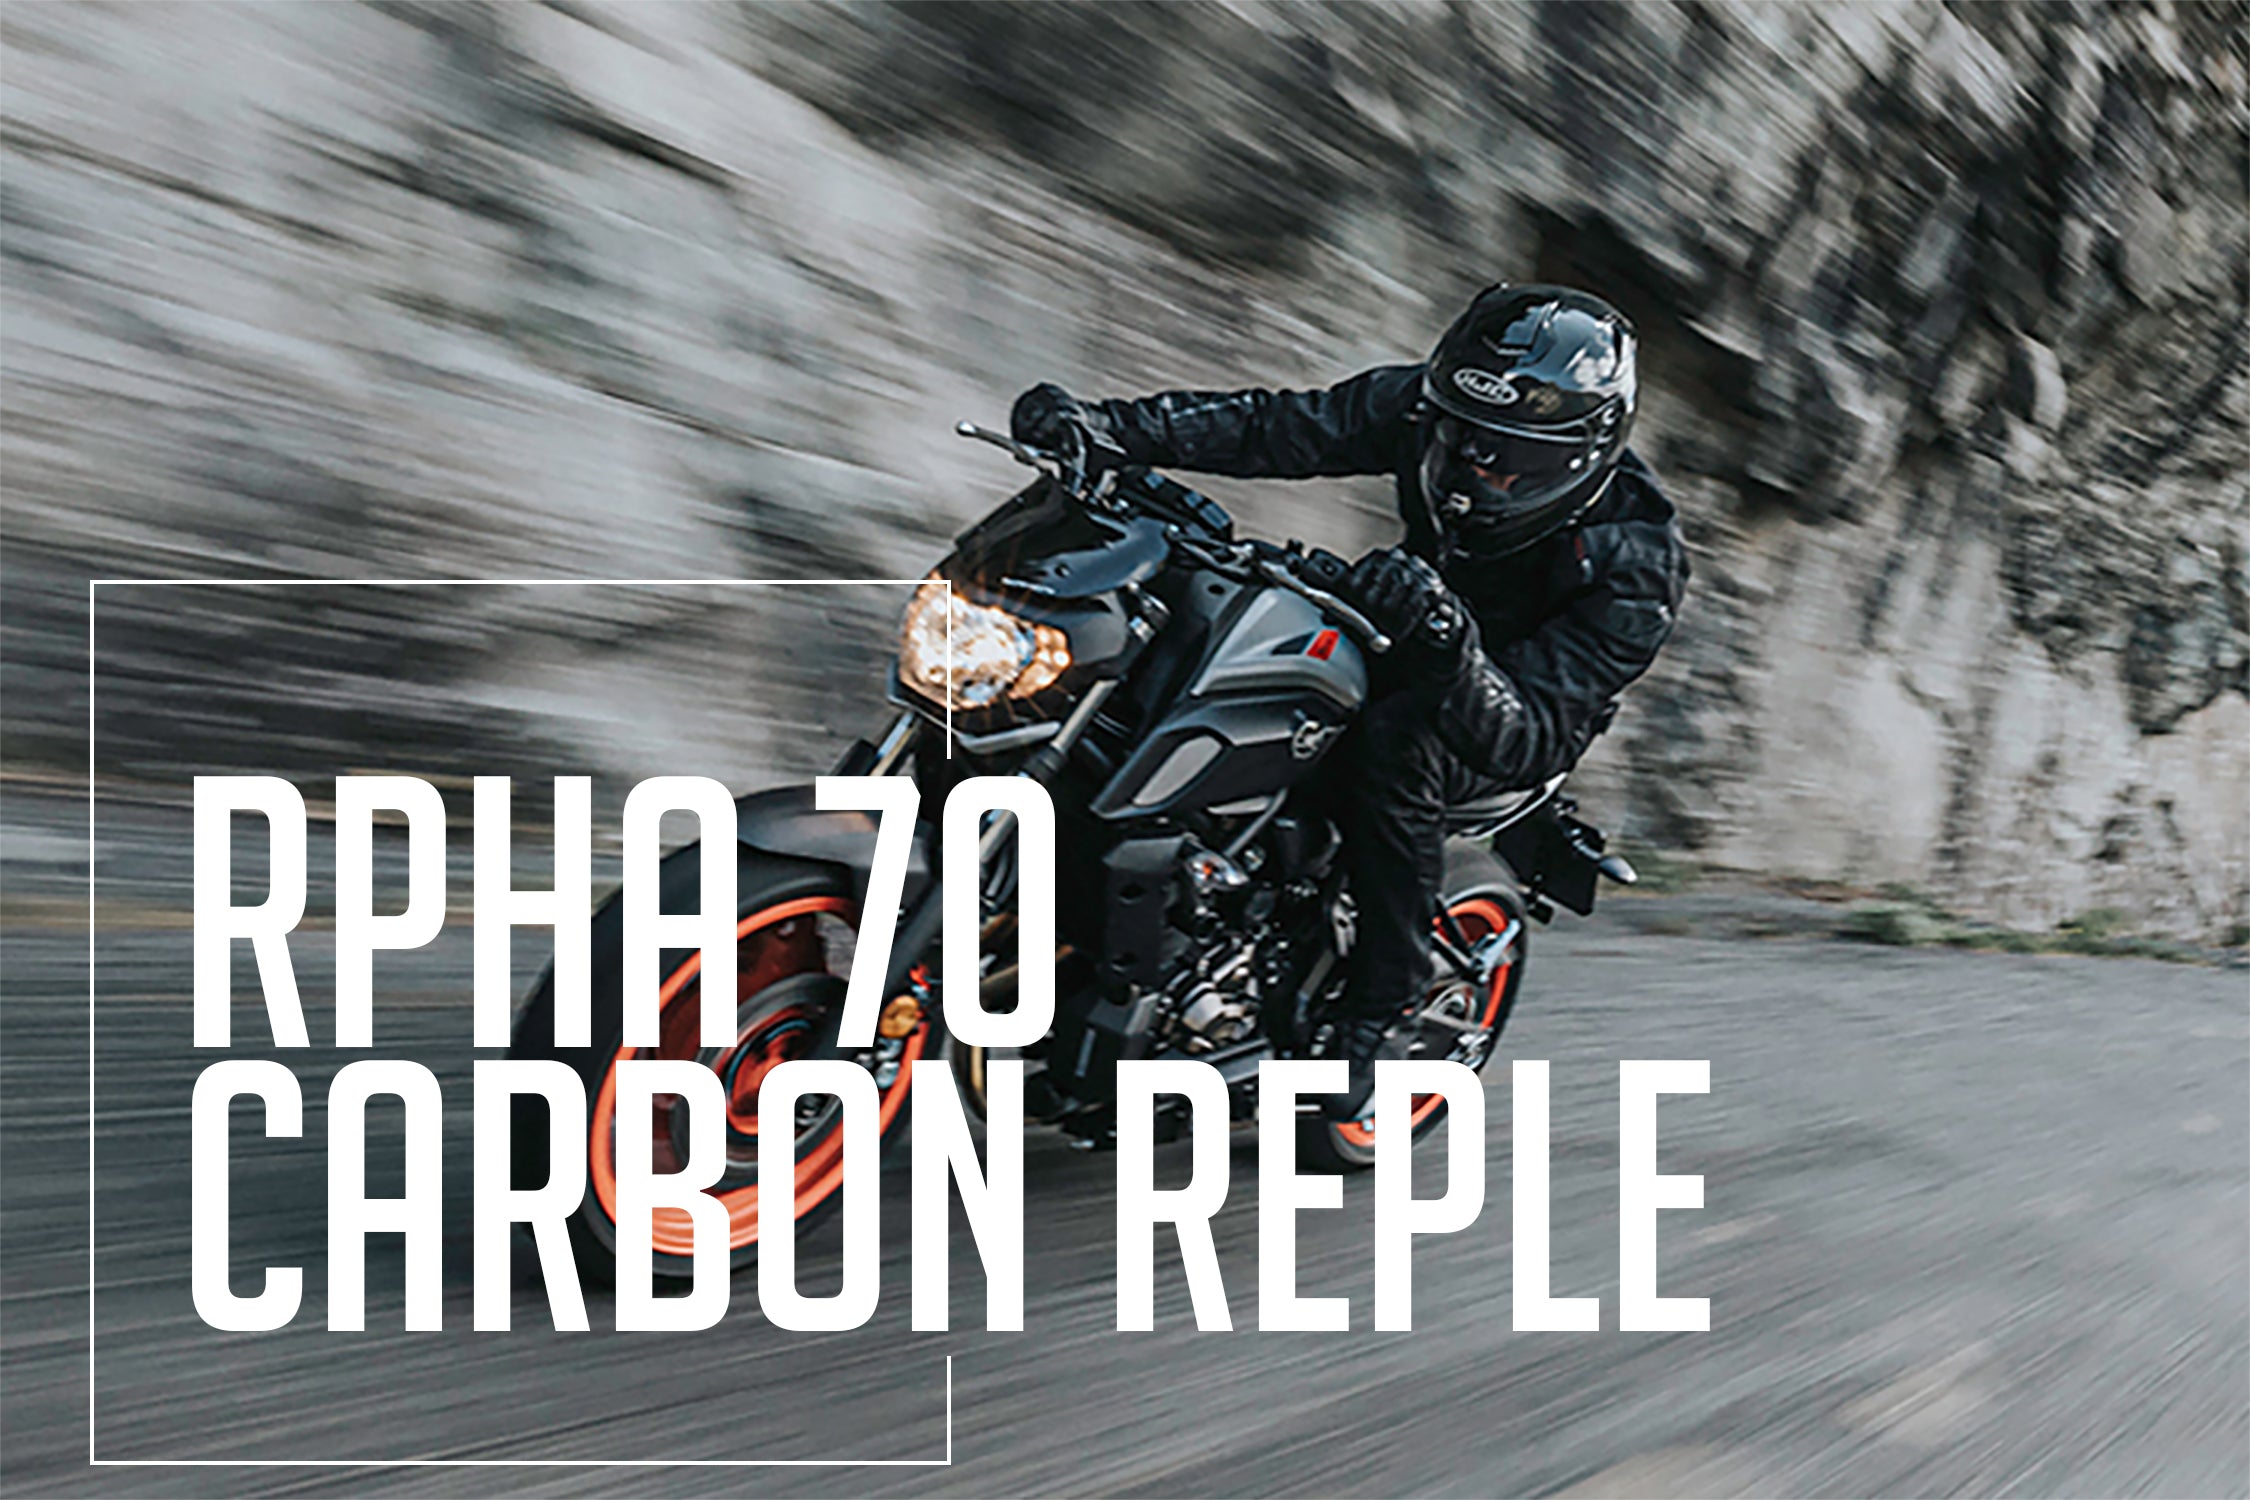 HJC Motorcycle Street Helmet | RPHA 70 Series Carbon Reple